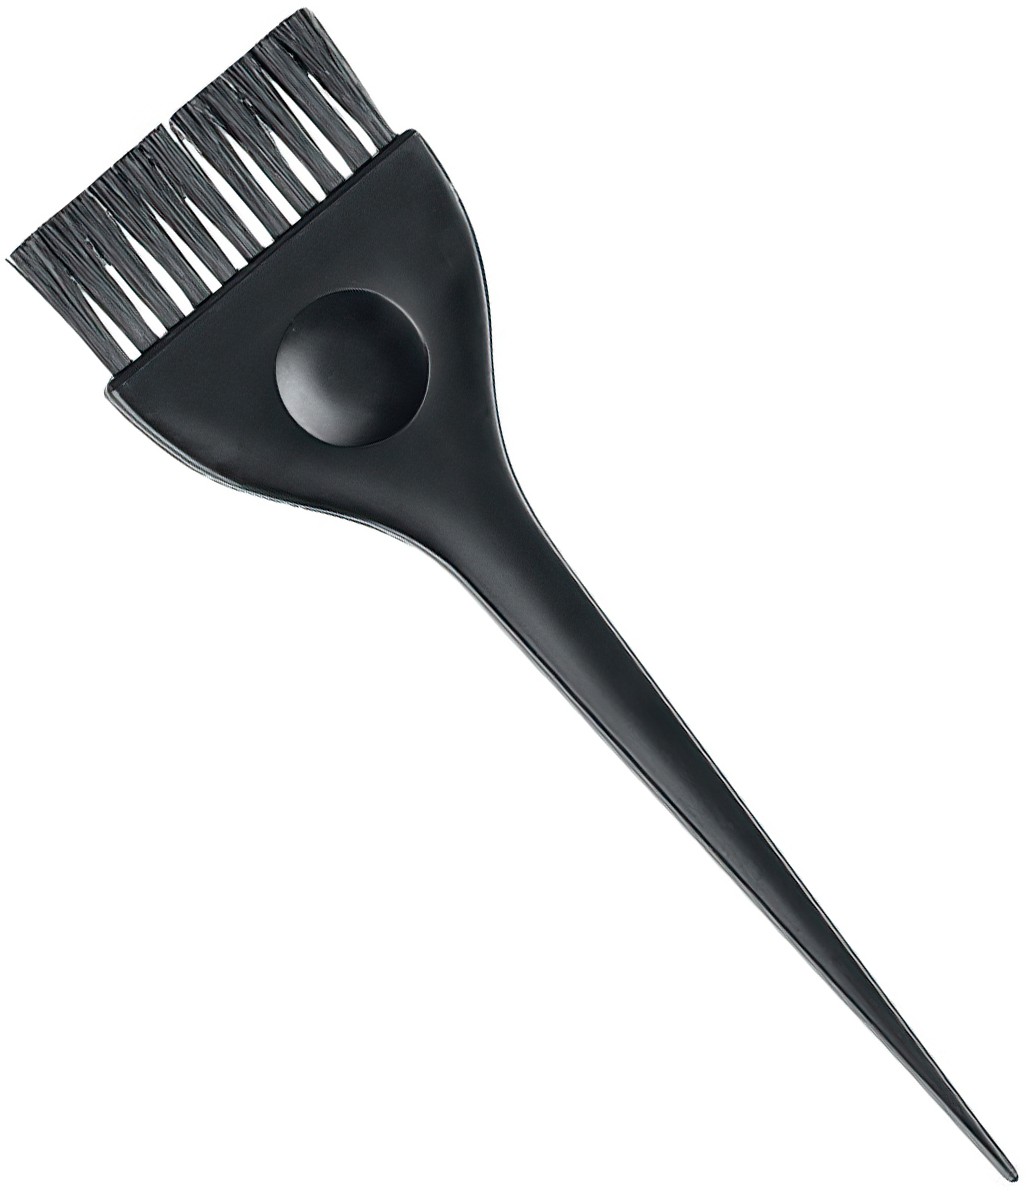  Efalock Tint Brush black large without Comb 